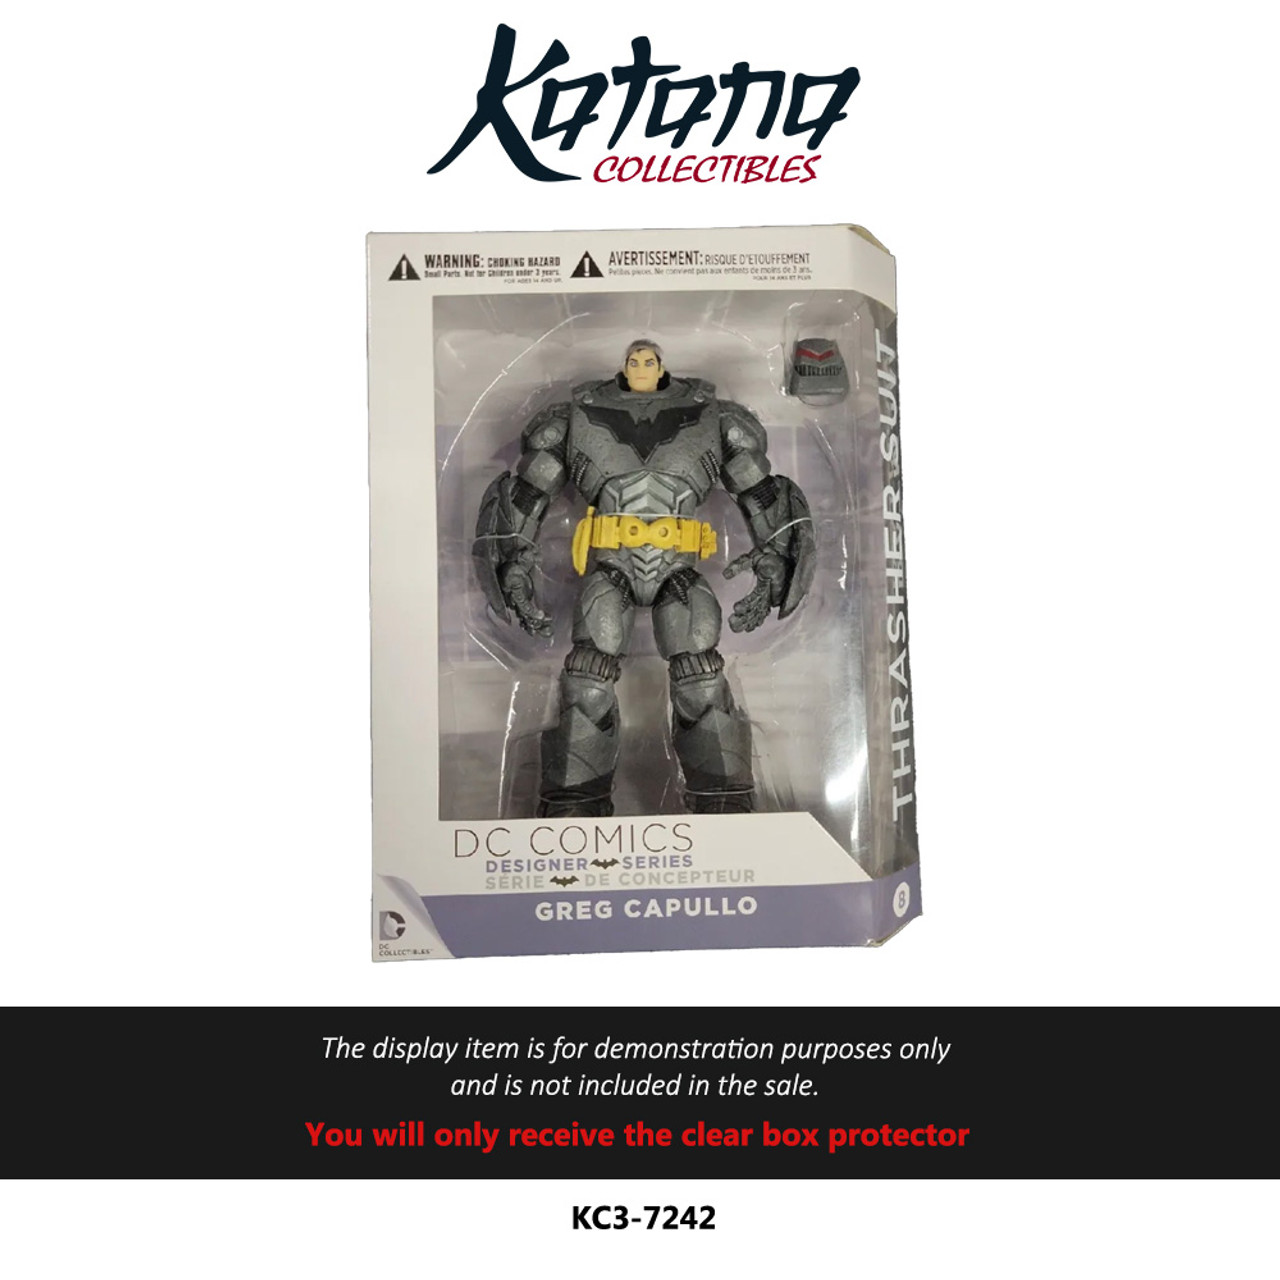 Katana Collectibles Protector For DC Collectibles DC Designer Series Greg Capullo Batman Figure